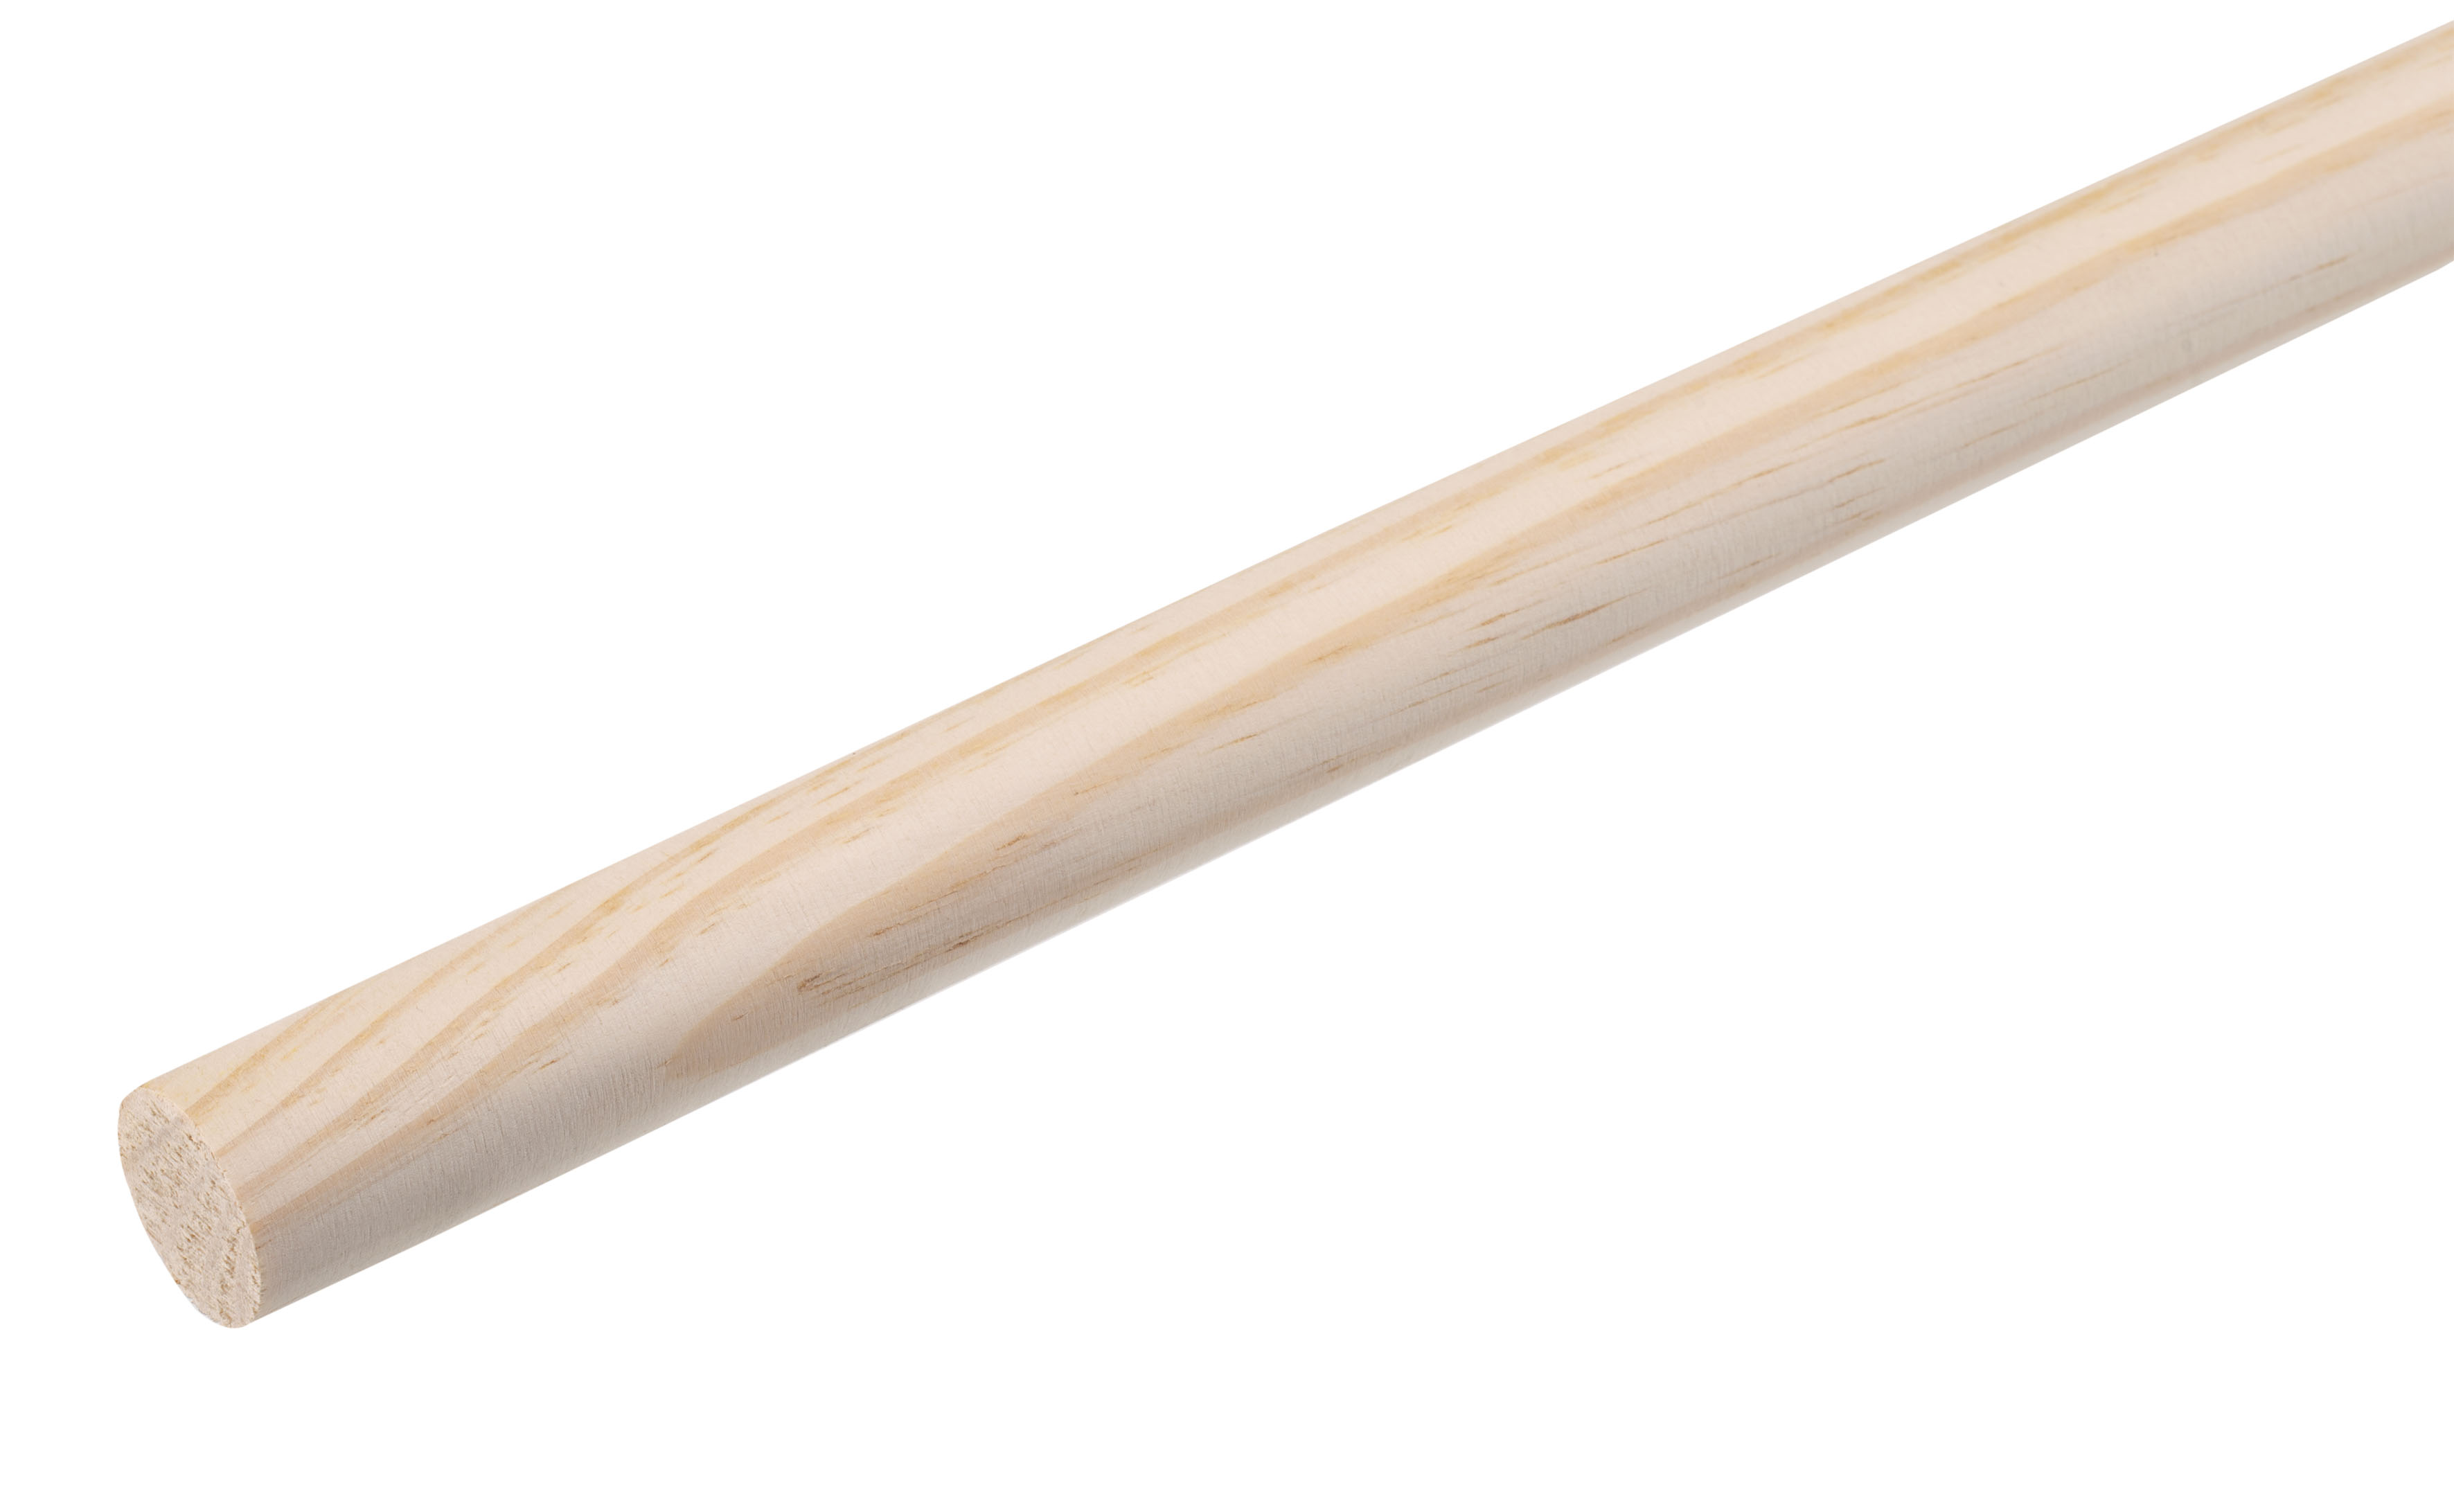 Wooden handle 24 mm